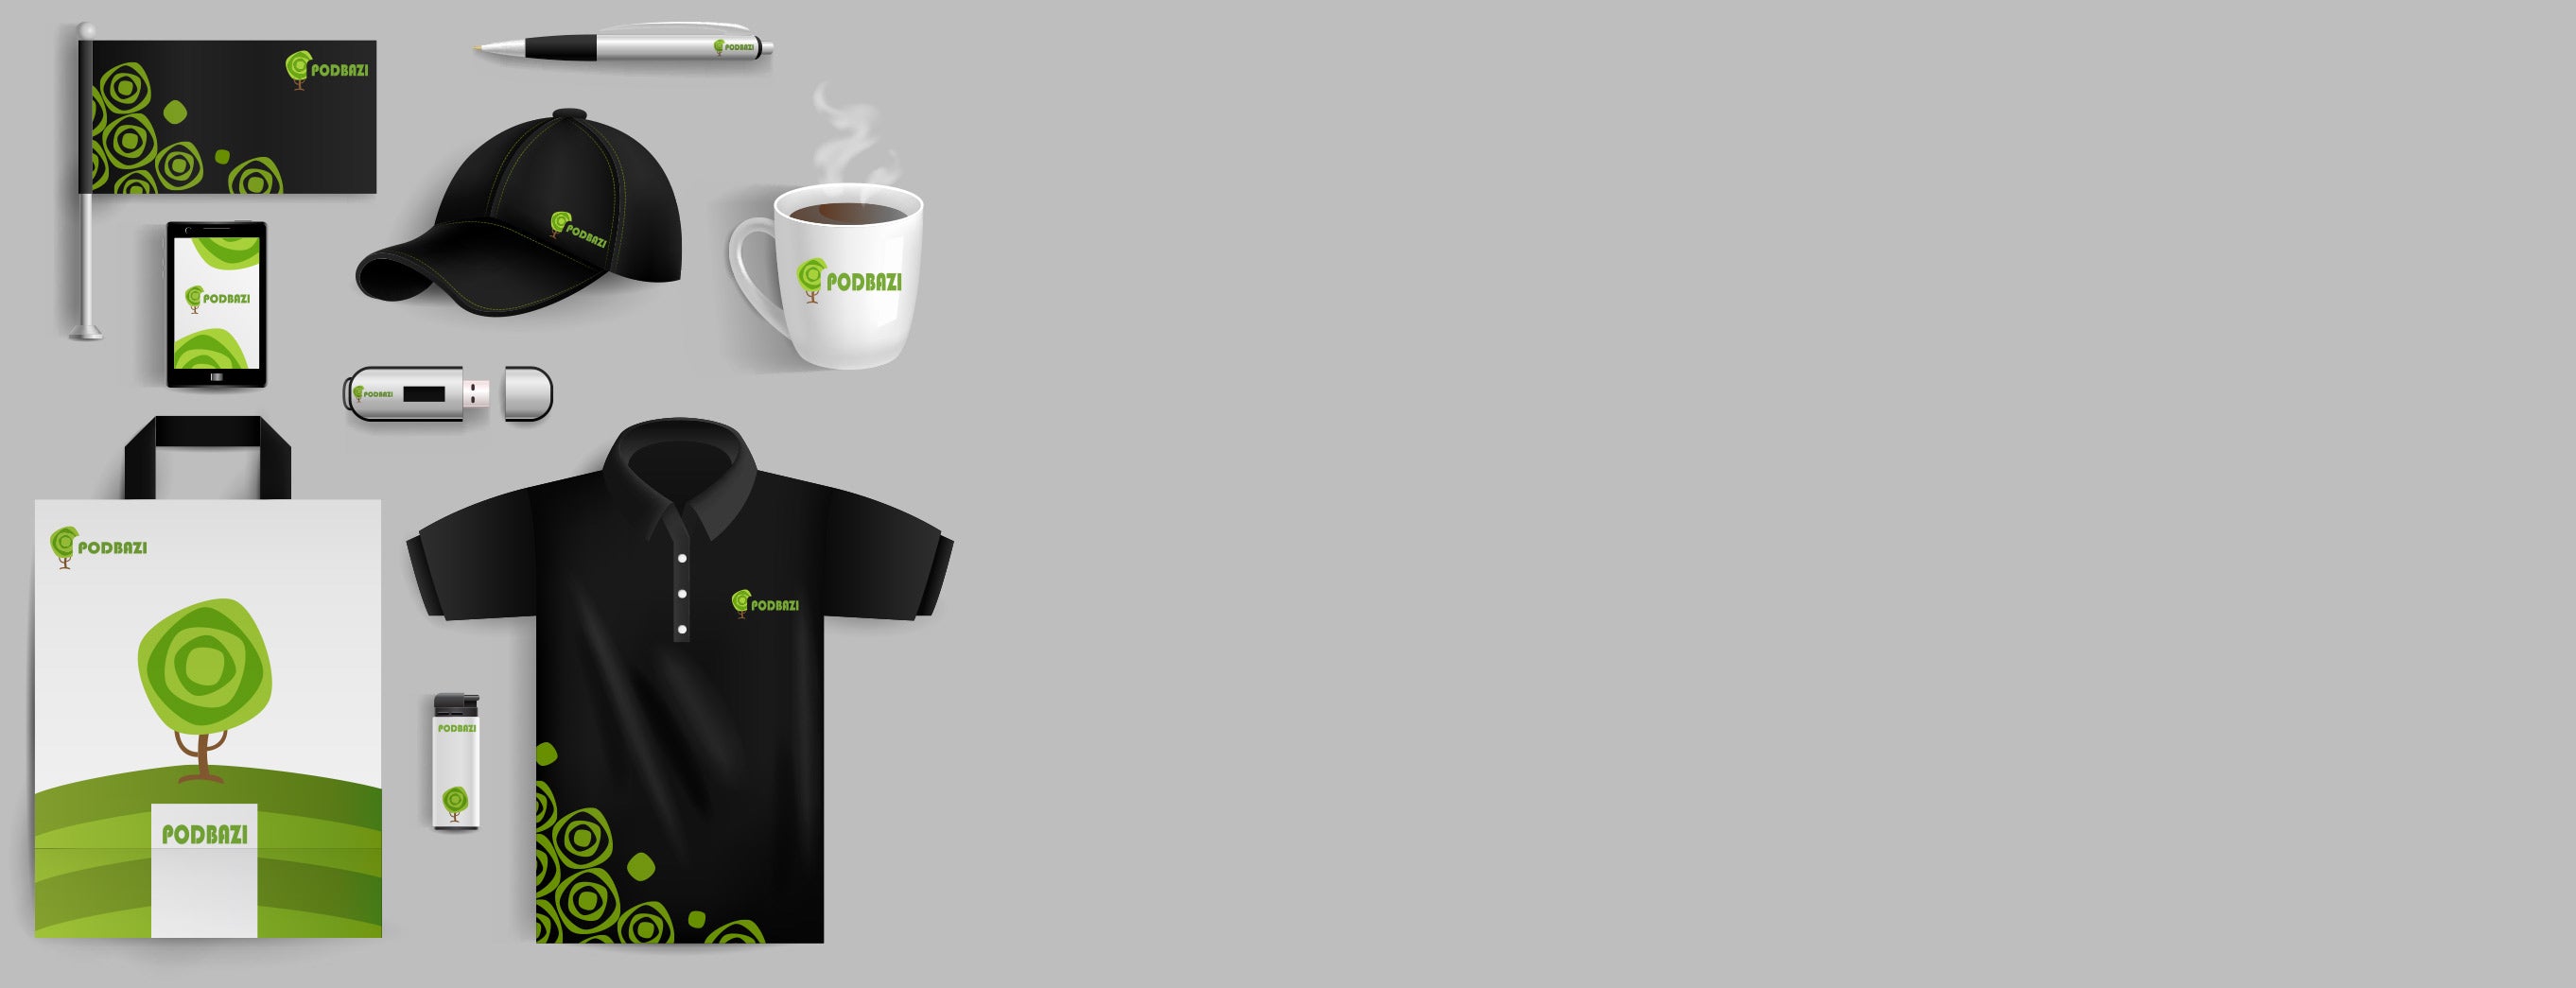 PODbazi: Tshirt Product Design - Design product (T-shirt, Mug, Bag, etc.)  with text, image, etc